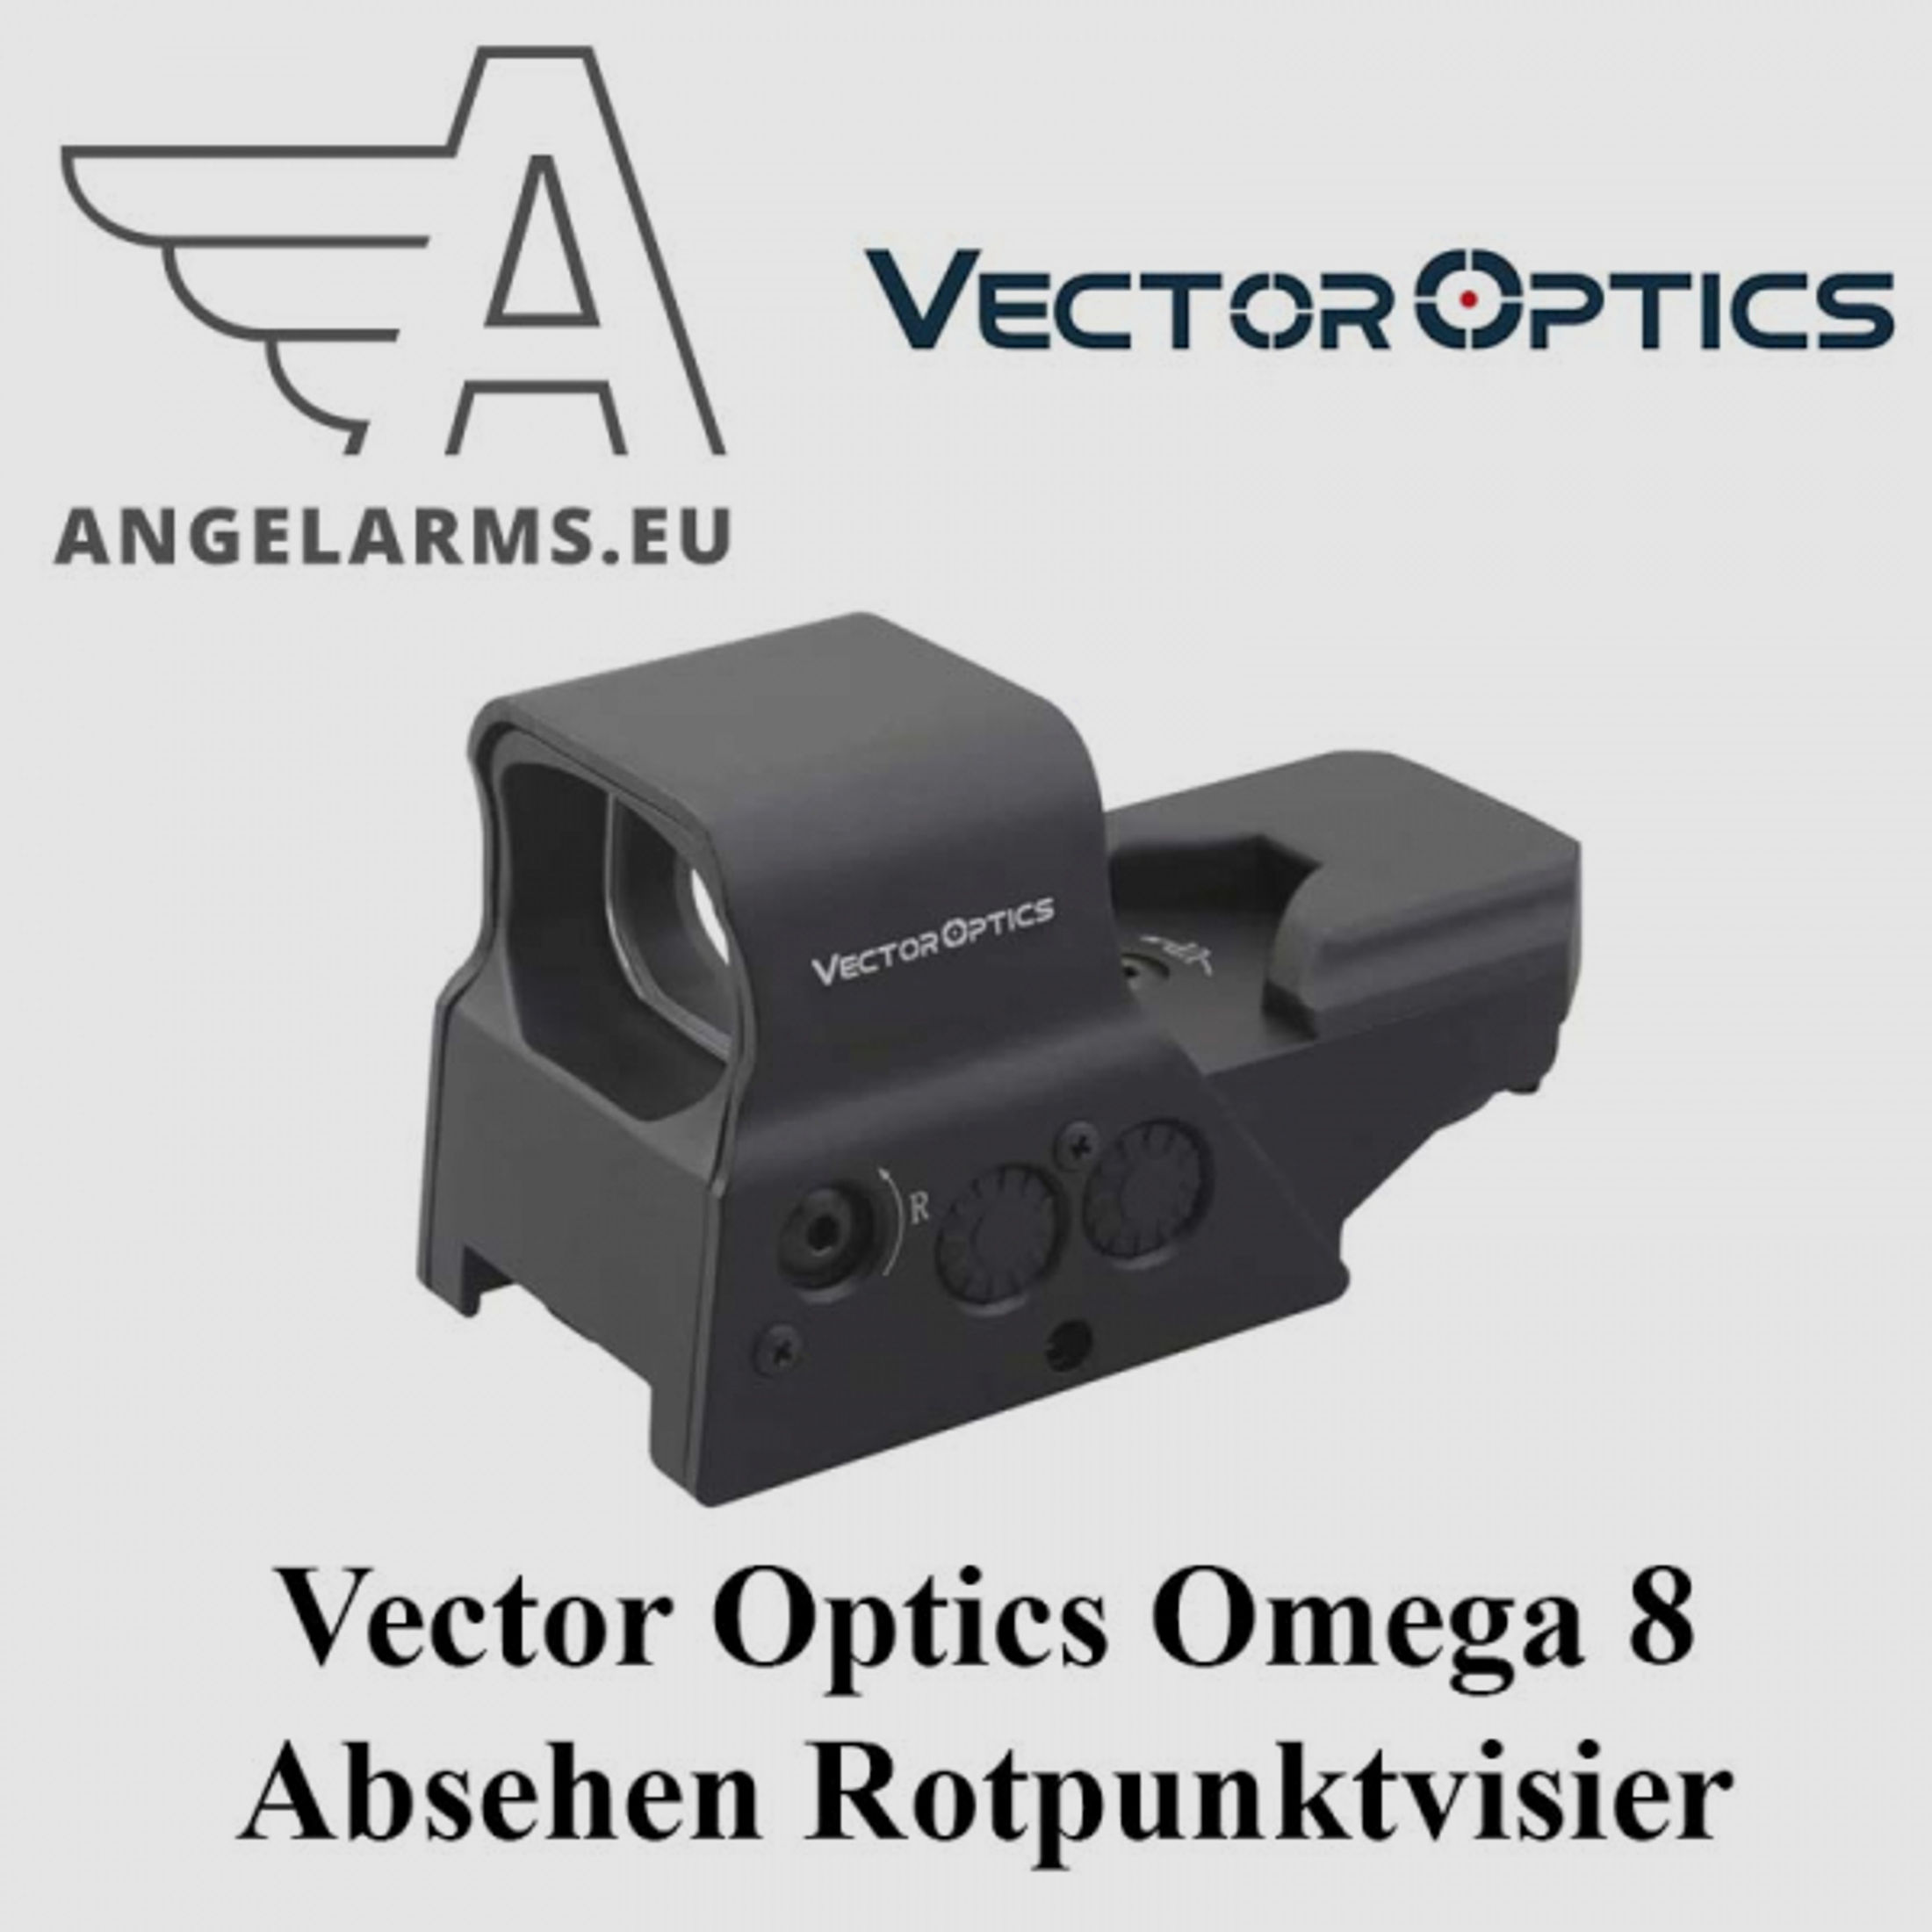 Vector Optics Omega 8 Absehen Rotpunktvisier www.angelarms.eu